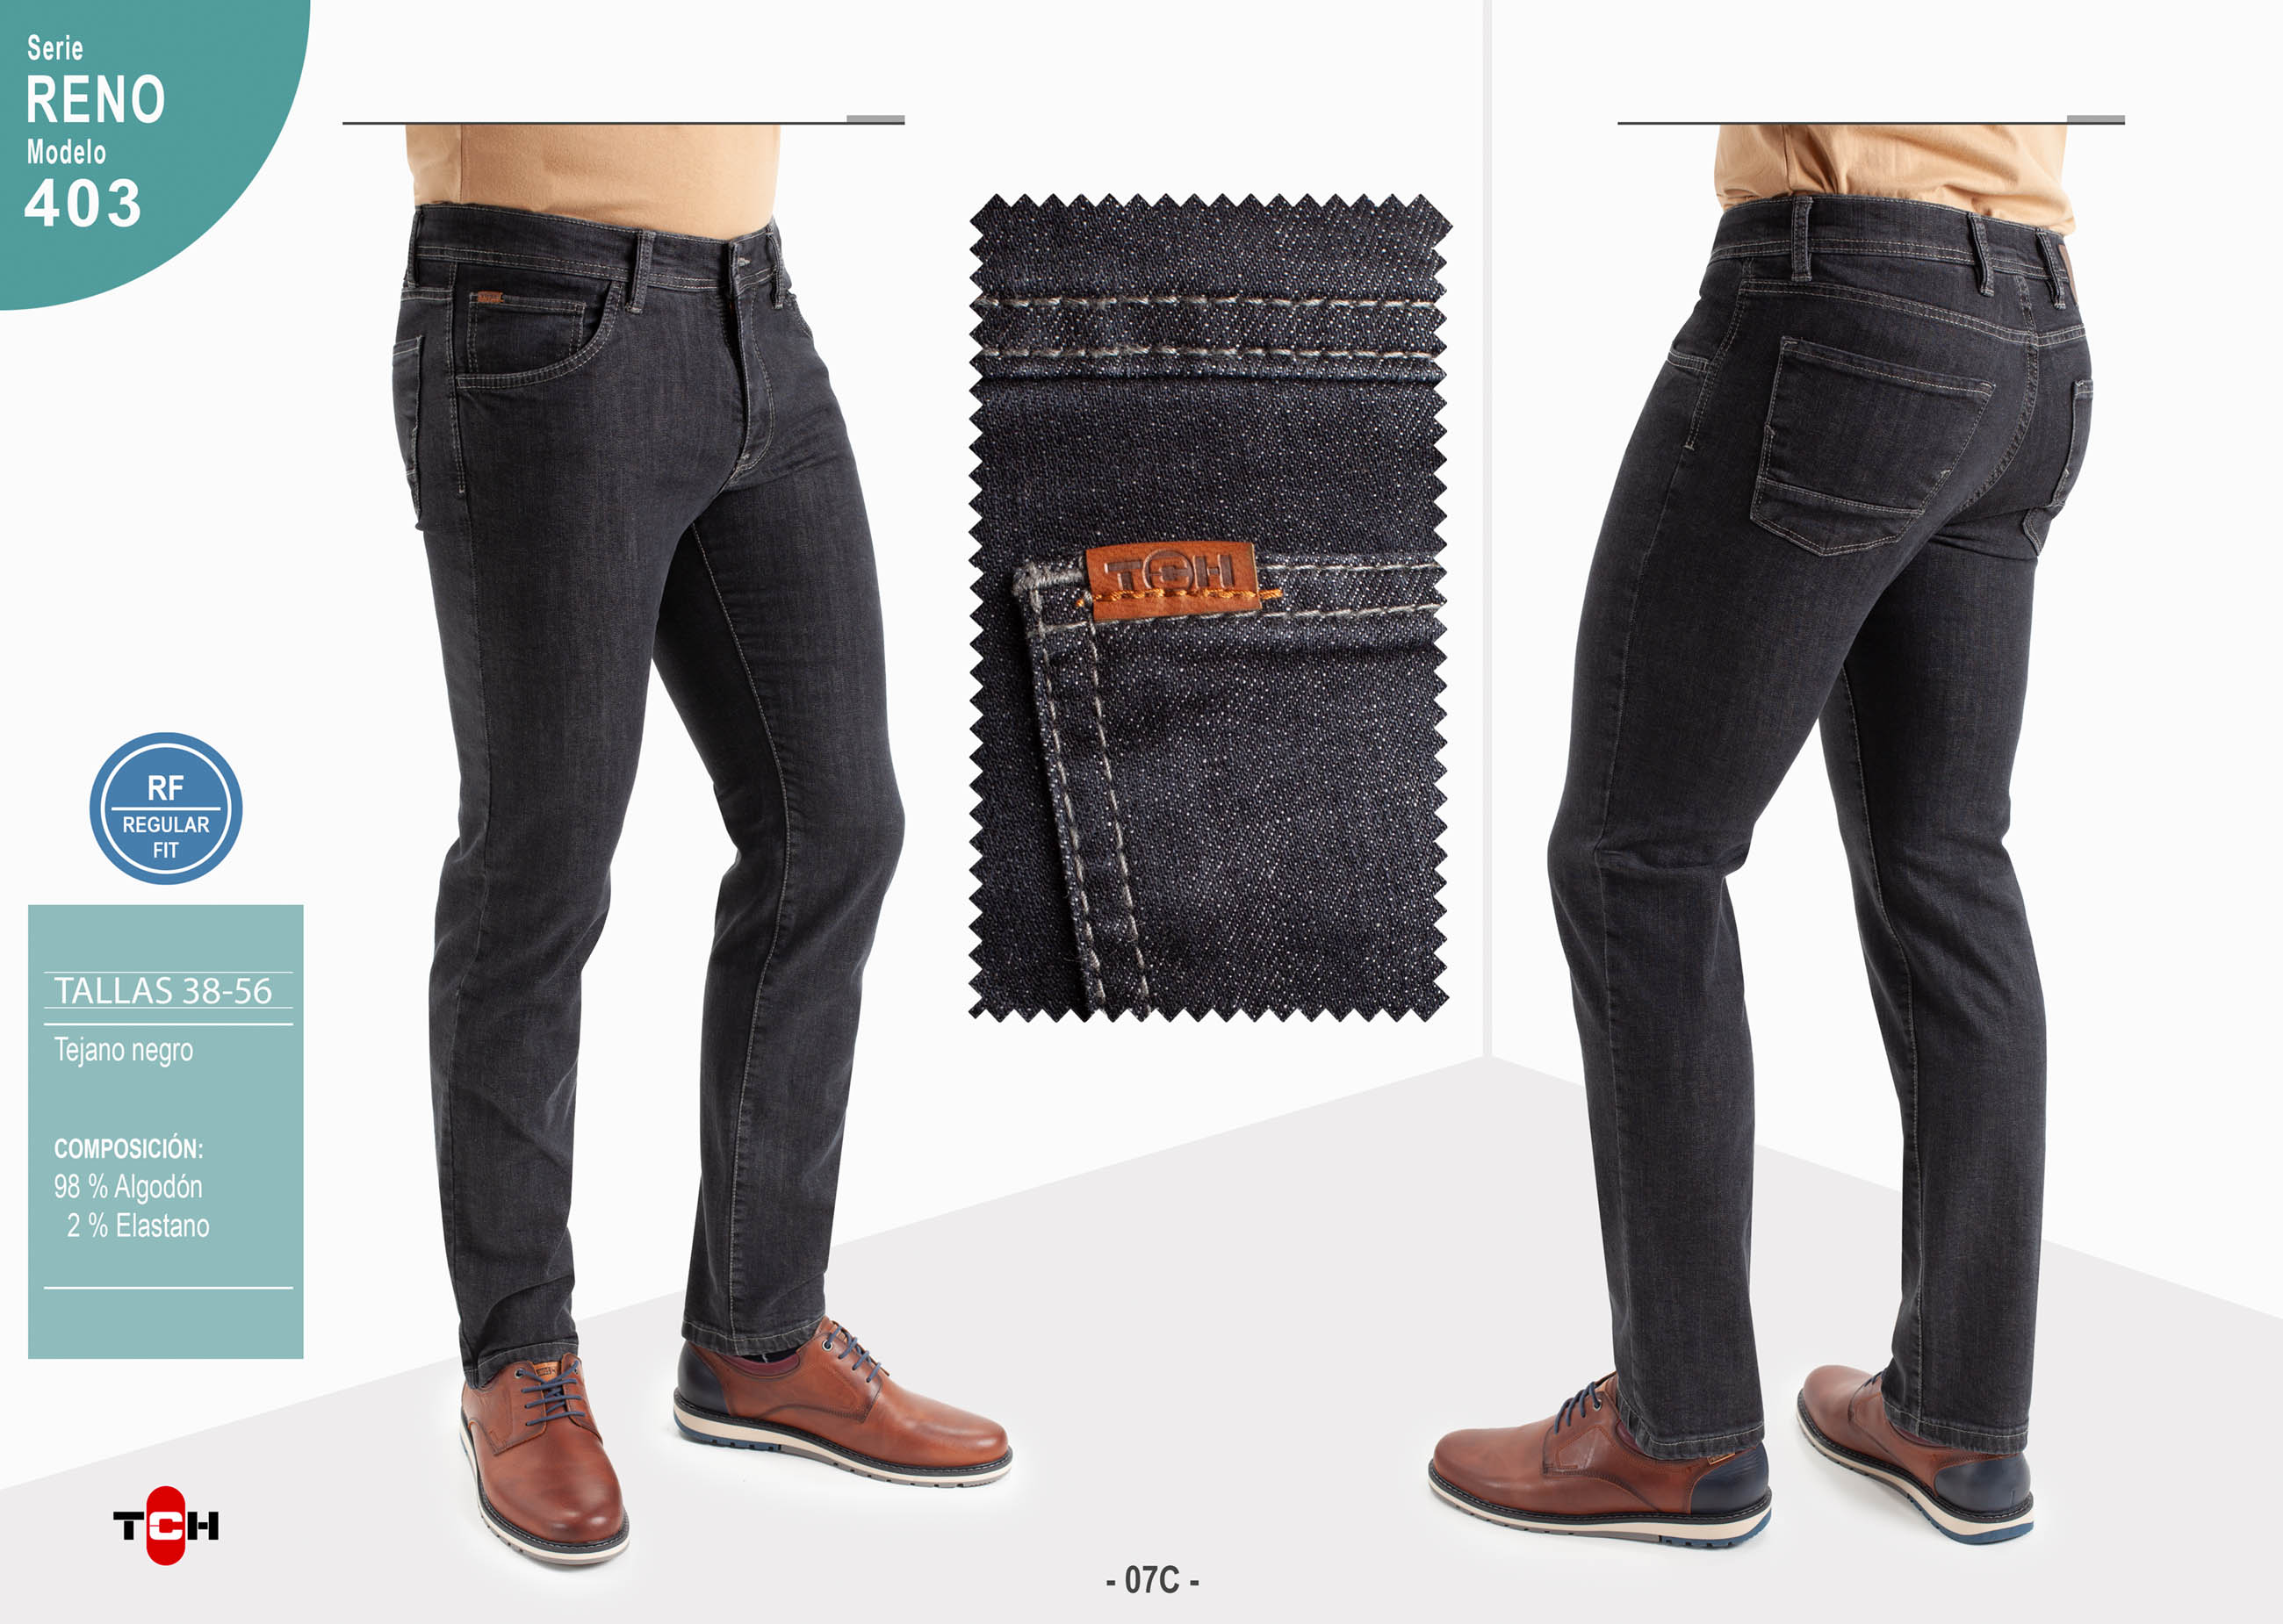 Pantalón vaquero para hombre Jeans 5 bolsillos de vaquero gris oscuro de algodón con lycra e hilo a contraste